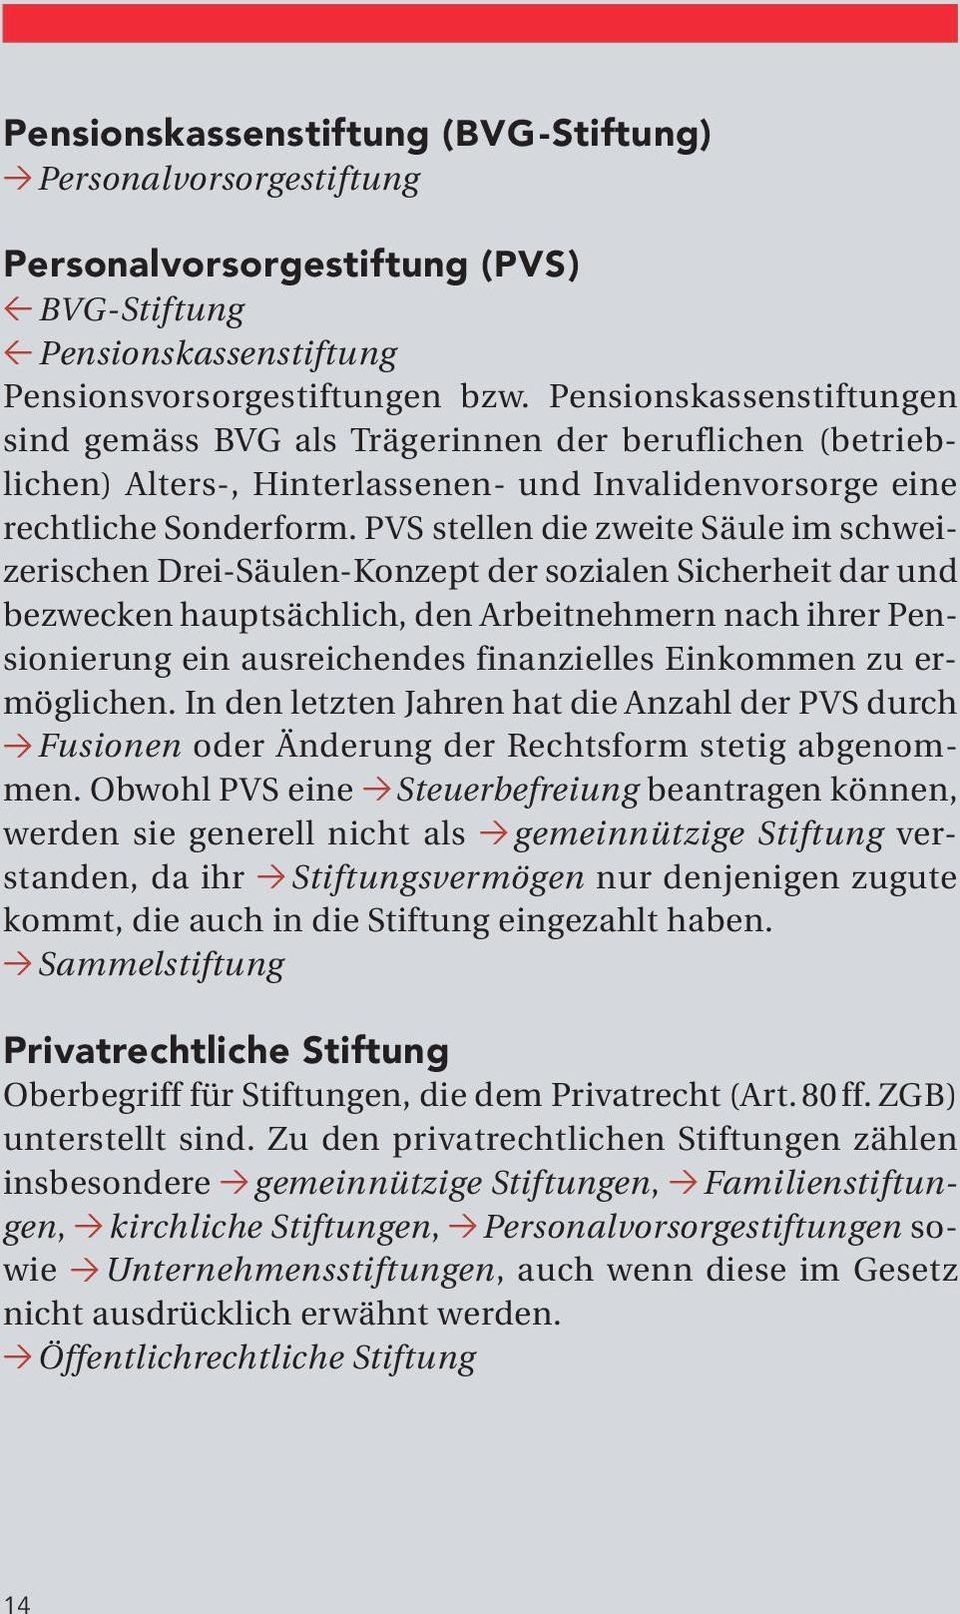 PVS stellen die zweite Säule im schweizerischen Drei-Säulen-Konzept der sozialen Sicherheit dar und bezwecken hauptsächlich, den Arbeitnehmern nach ihrer Pensionierung ein ausreichendes finanzielles